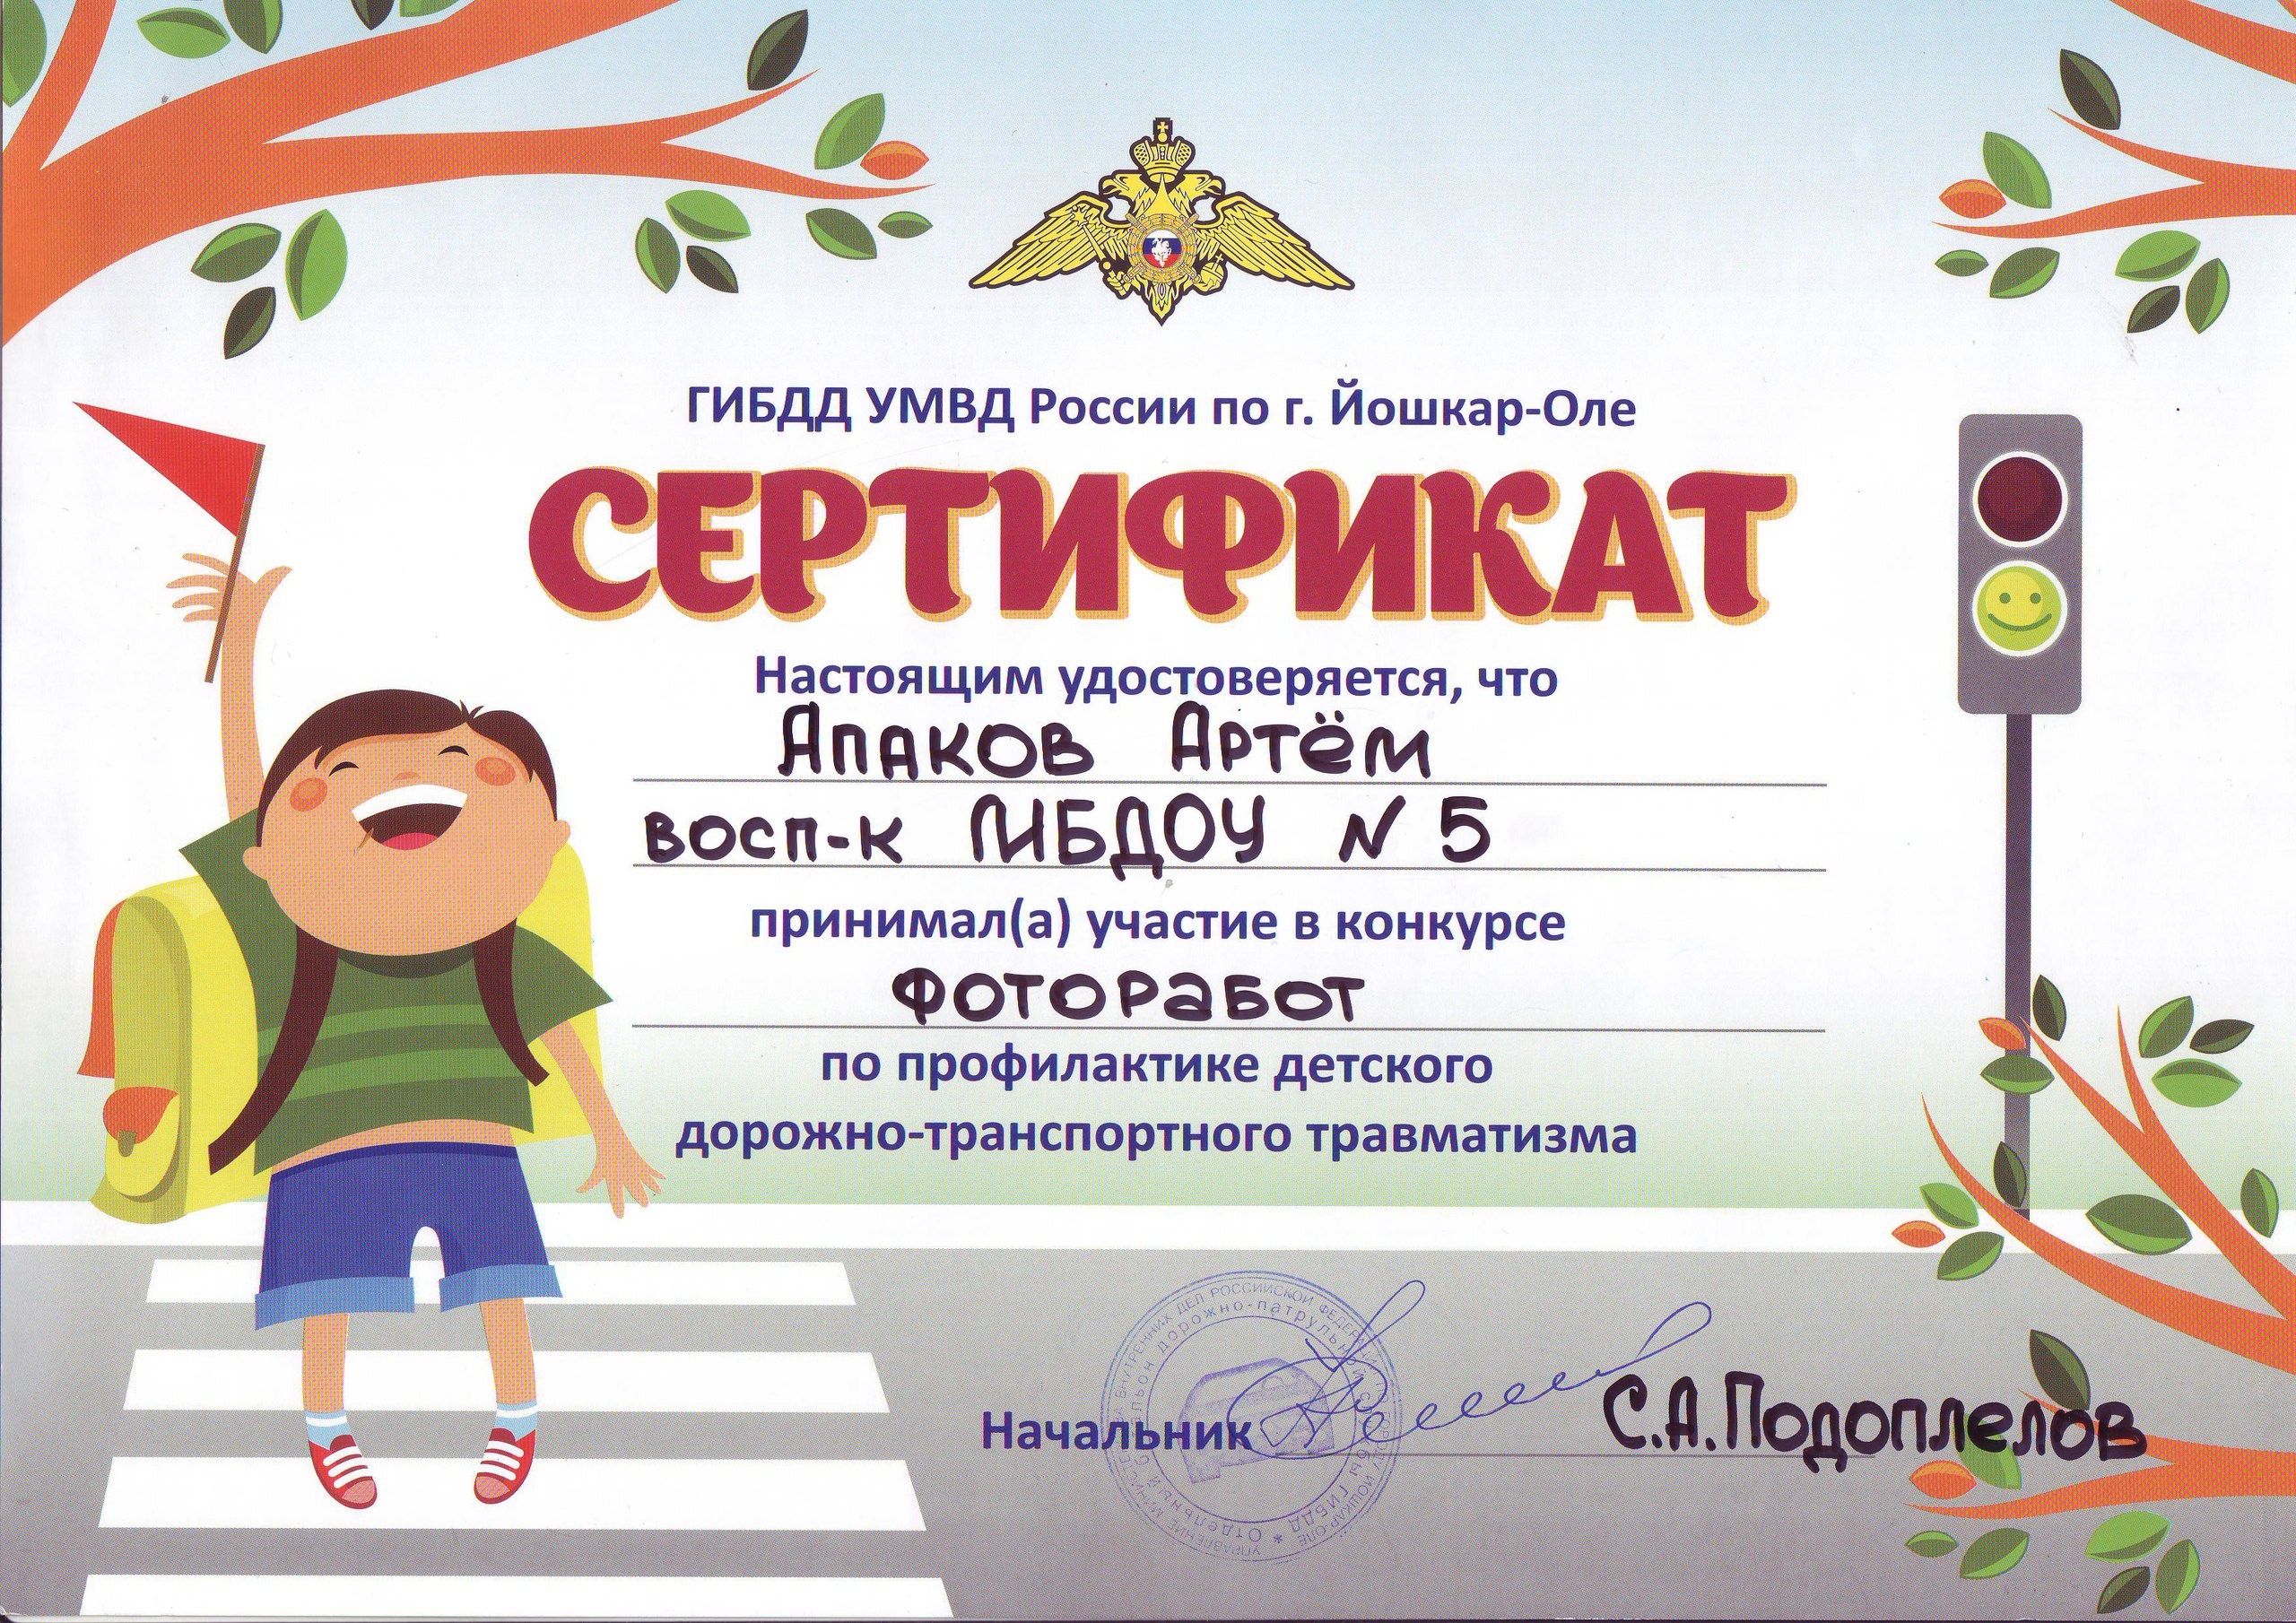 Сертификат Аппаков Артем